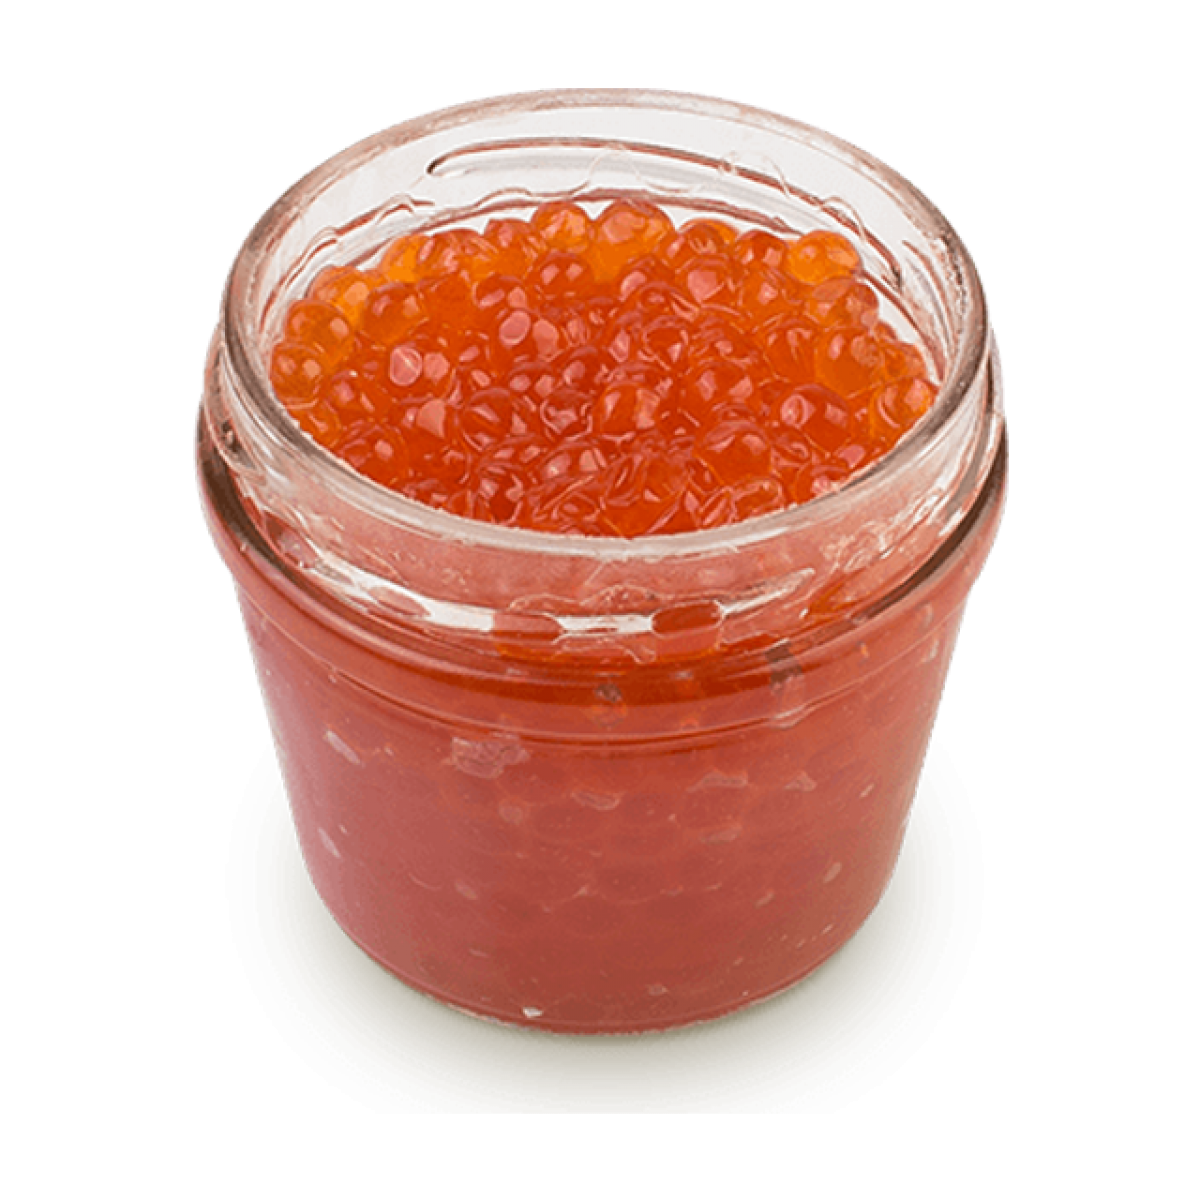 http://hungrygerald.com/wp-content/uploads/2018/08/gorkunov-red-caviar-100gr-640x640.png